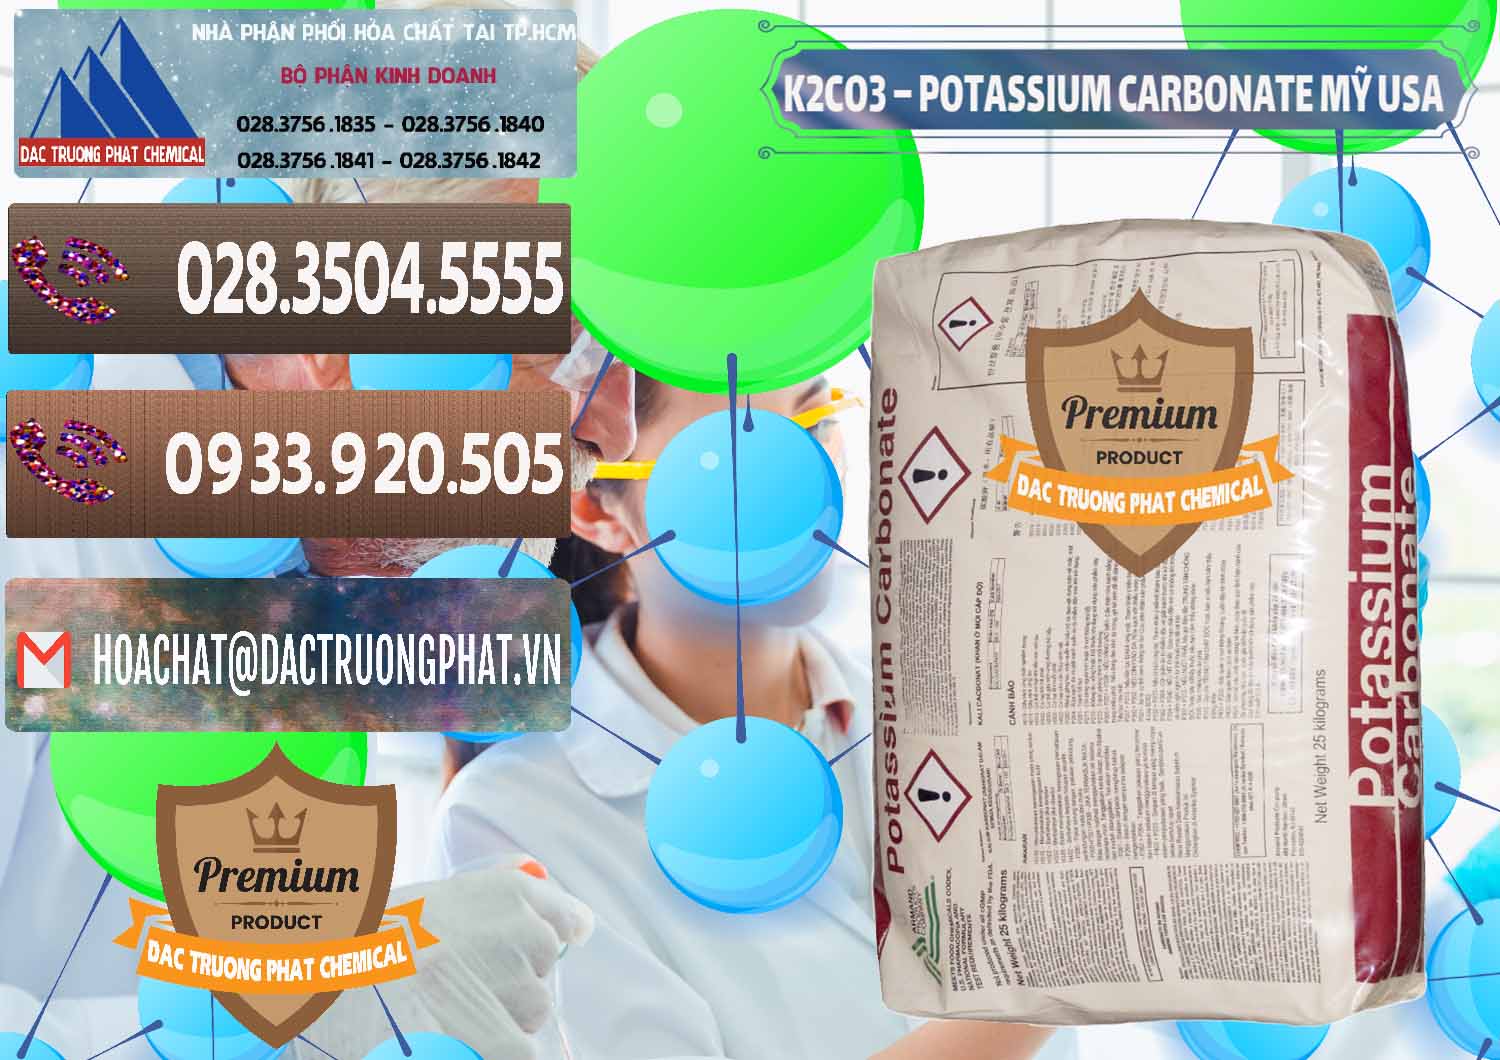 Công ty nhập khẩu và bán K2Co3 – Potassium Carbonate Mỹ USA - 0082 - Cung cấp & kinh doanh hóa chất tại TP.HCM - hoachatviet.net